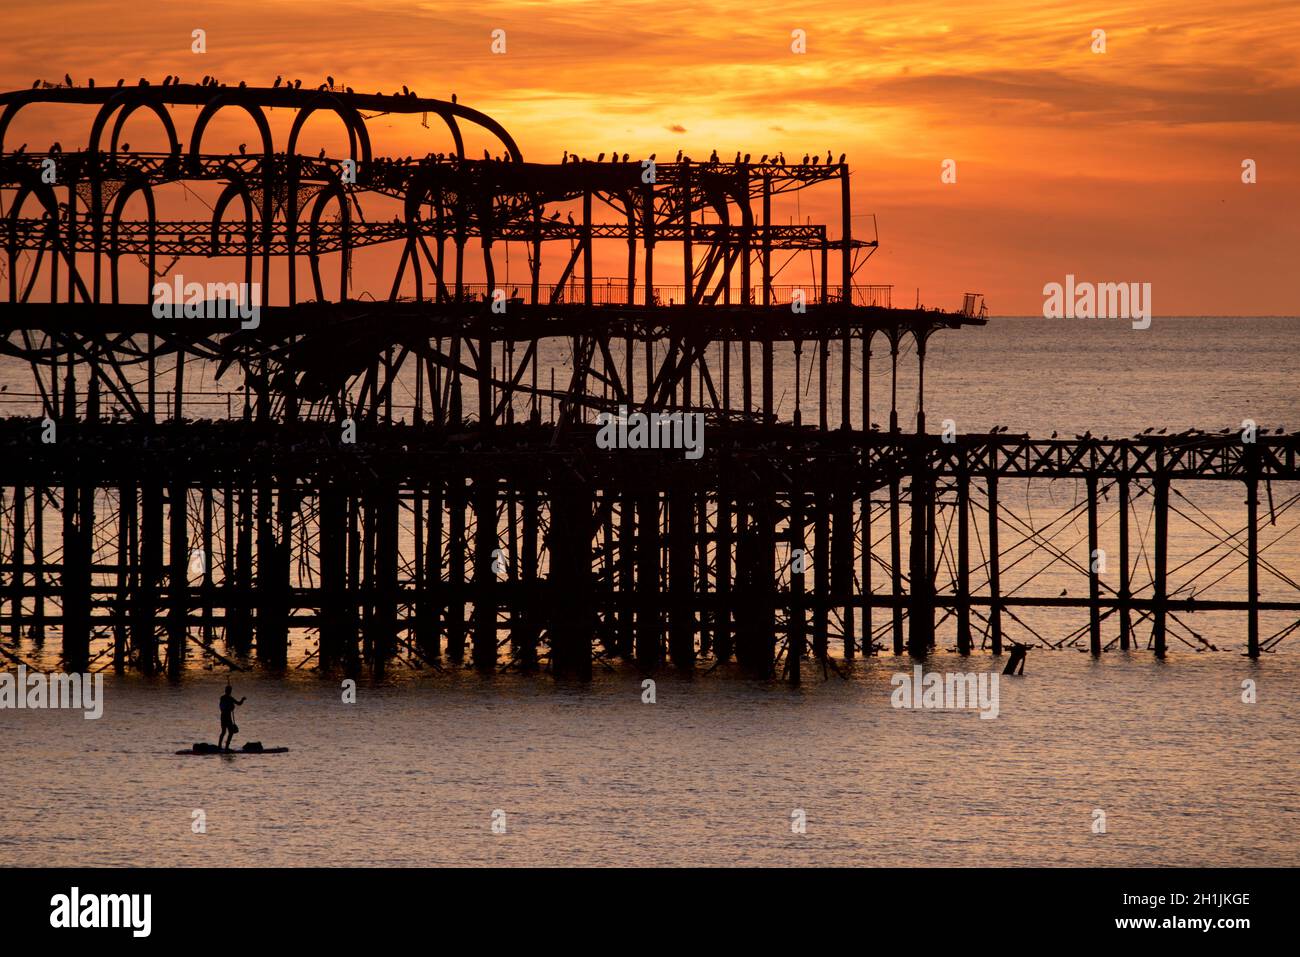 Pédalo silhoueté sur la jetée ouest abandonnée au coucher du soleil, Brighton, Angleterre.Construit en 1866 et fermé en 1975, le quai est toujours classé de catégorie I et un site bien connu. Banque D'Images